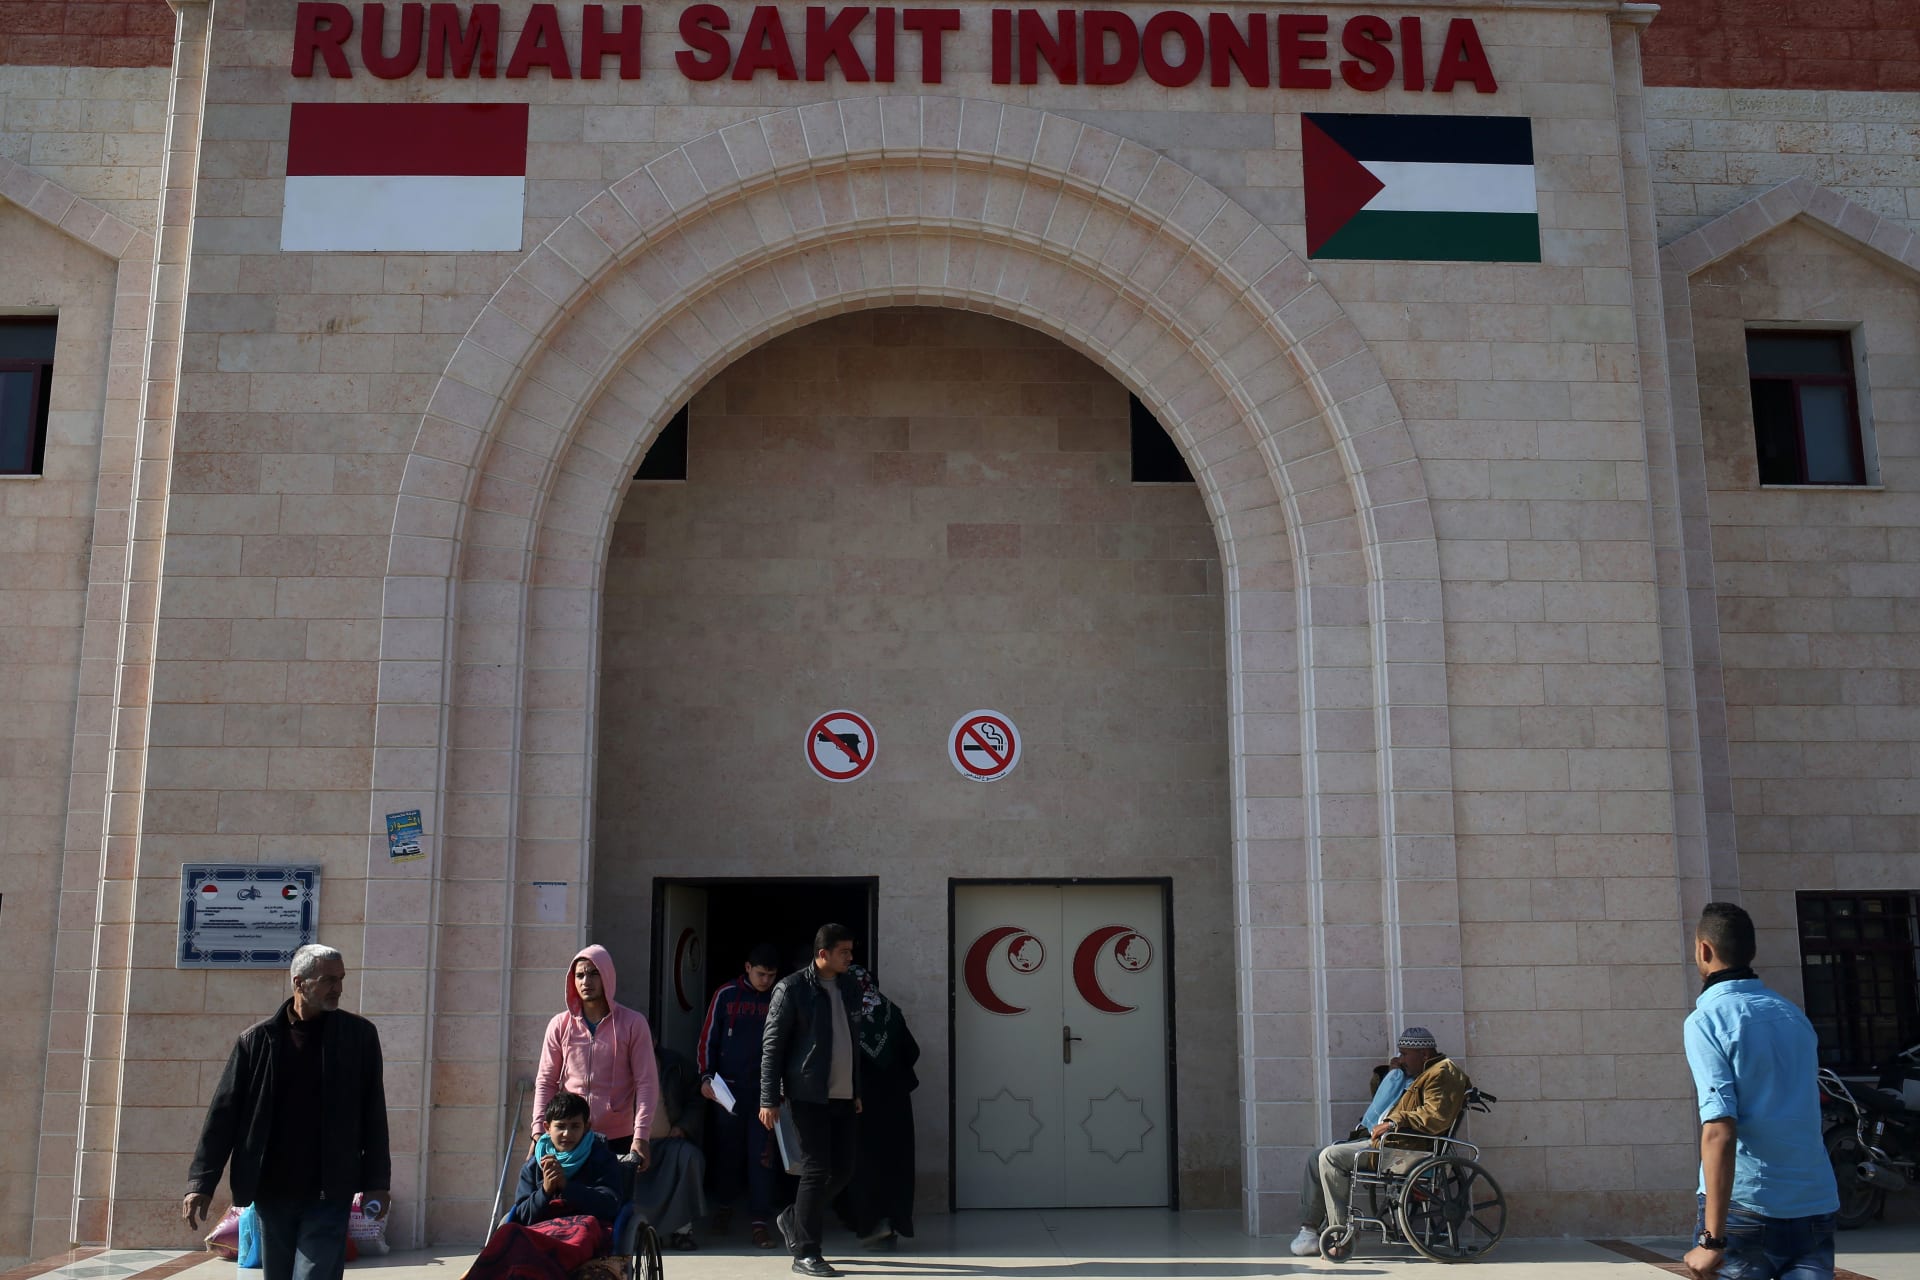 مستشار نتنياهو يُدافع عن ضرب المستشفى الإندونيسي في غزة: "متناسب مع القانون الدولي"